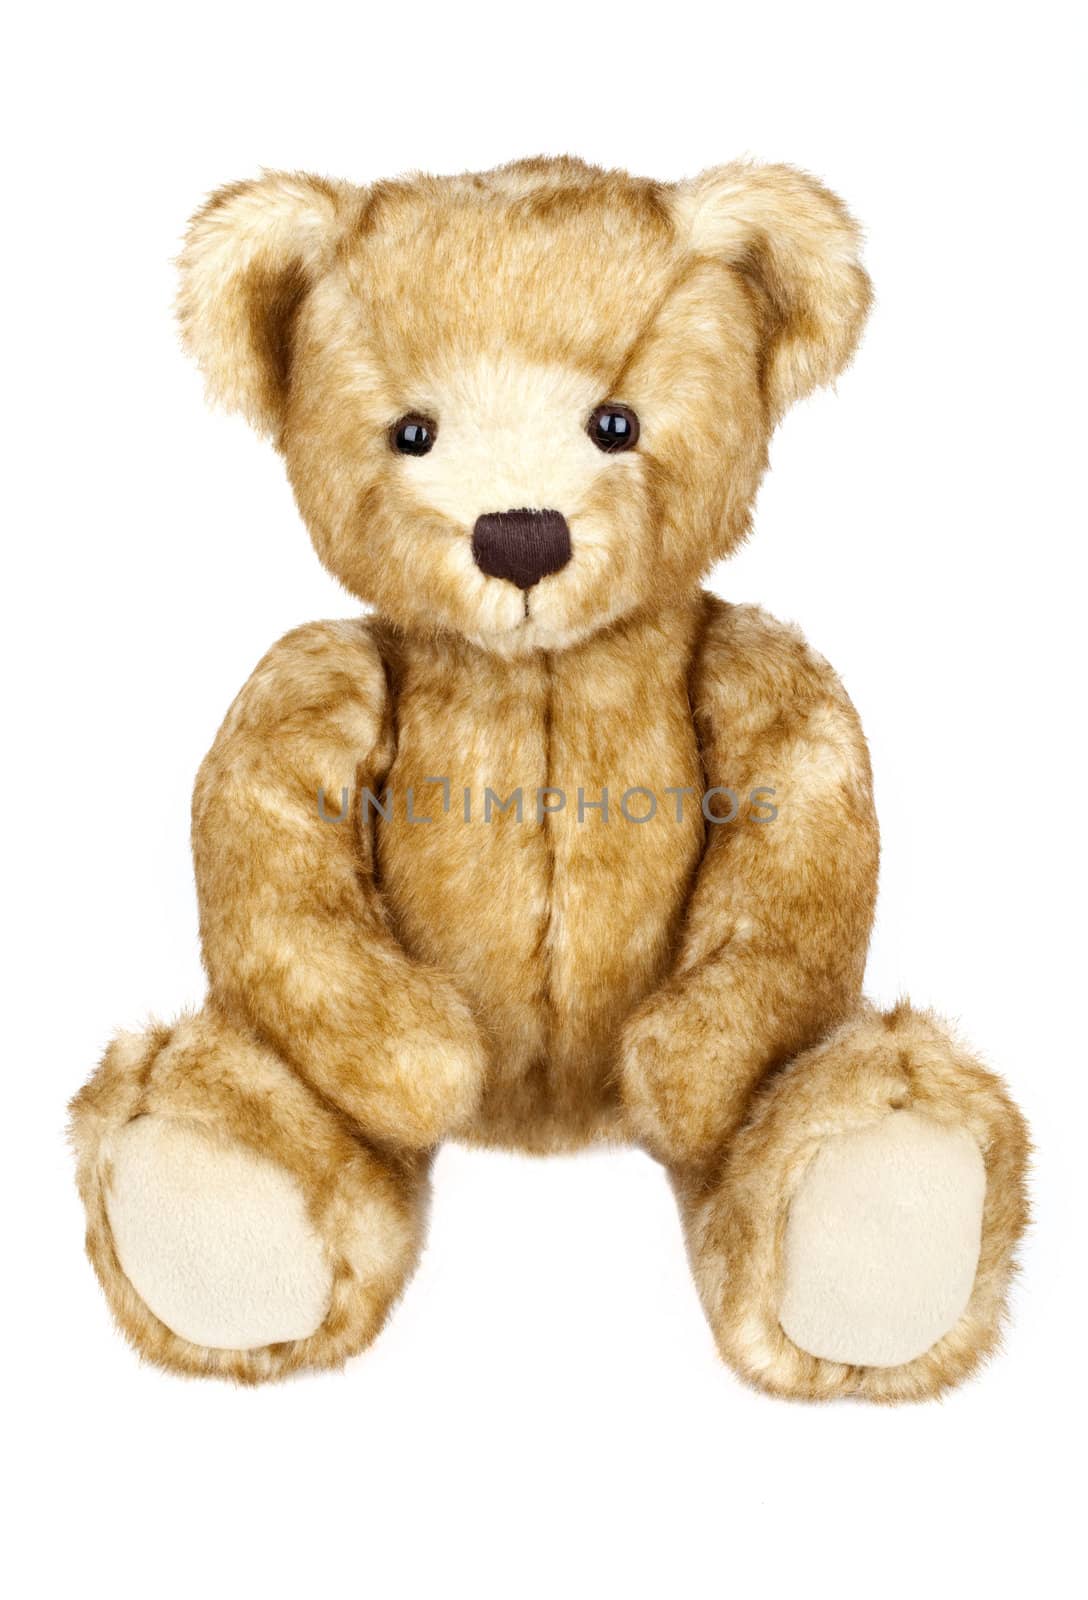 Teddy Bear by chrisdorney